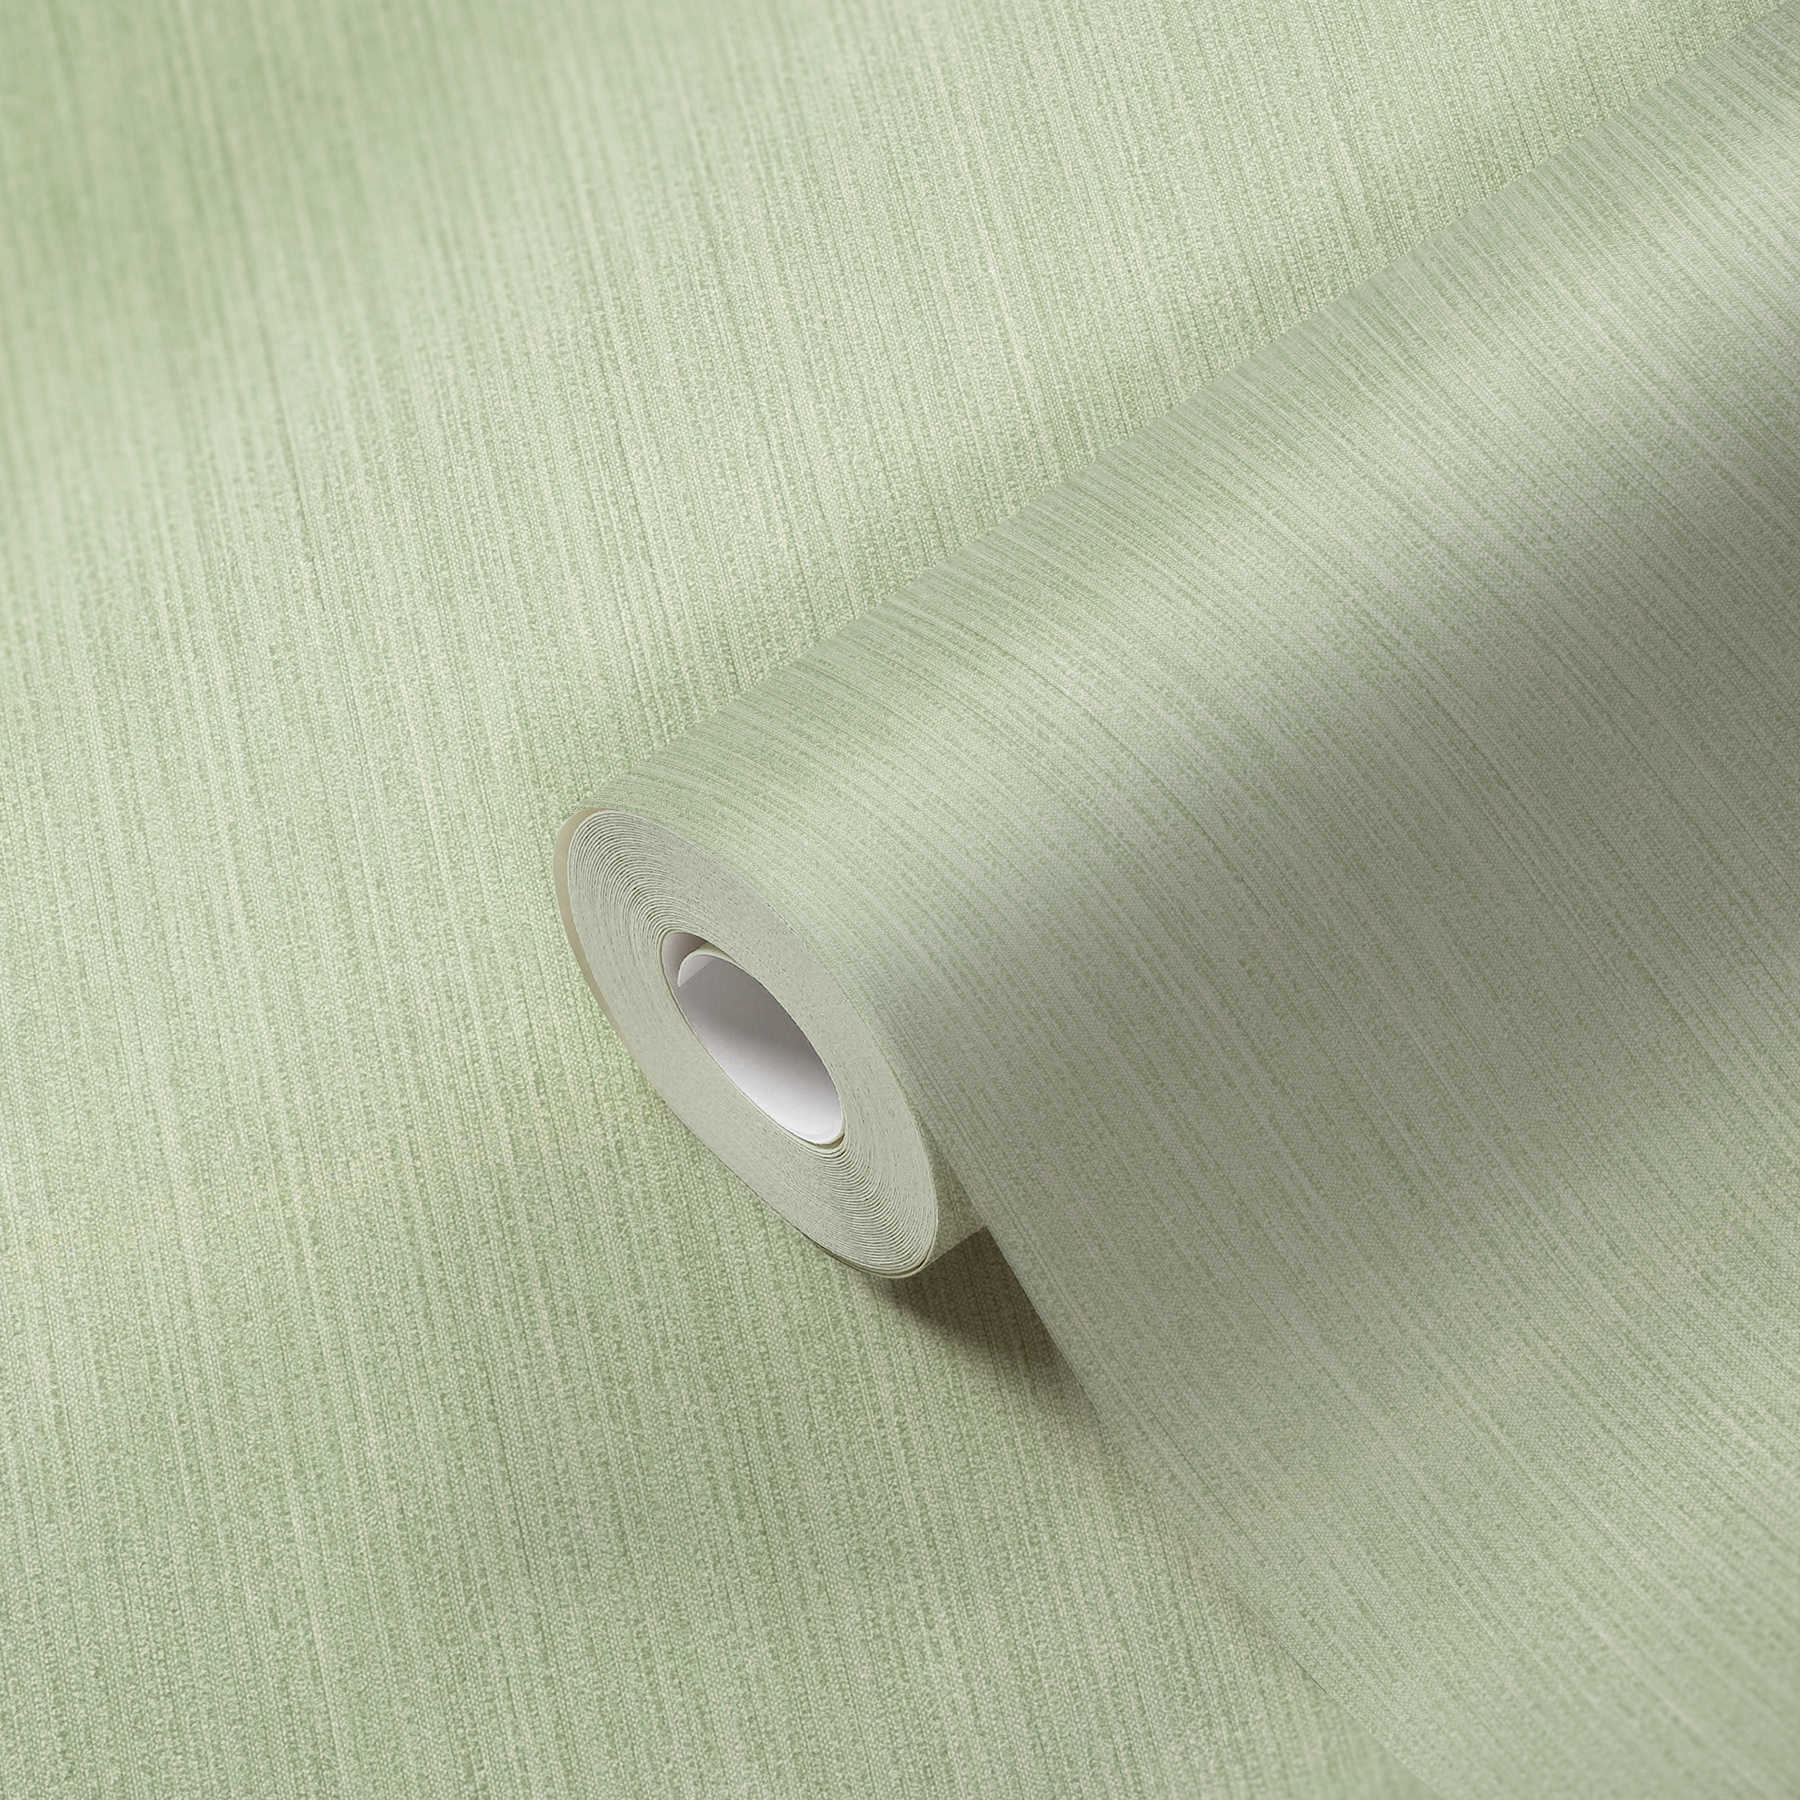             MICHALSKY eenheidsbehang met gevlekte kleurstructuur - groen
        